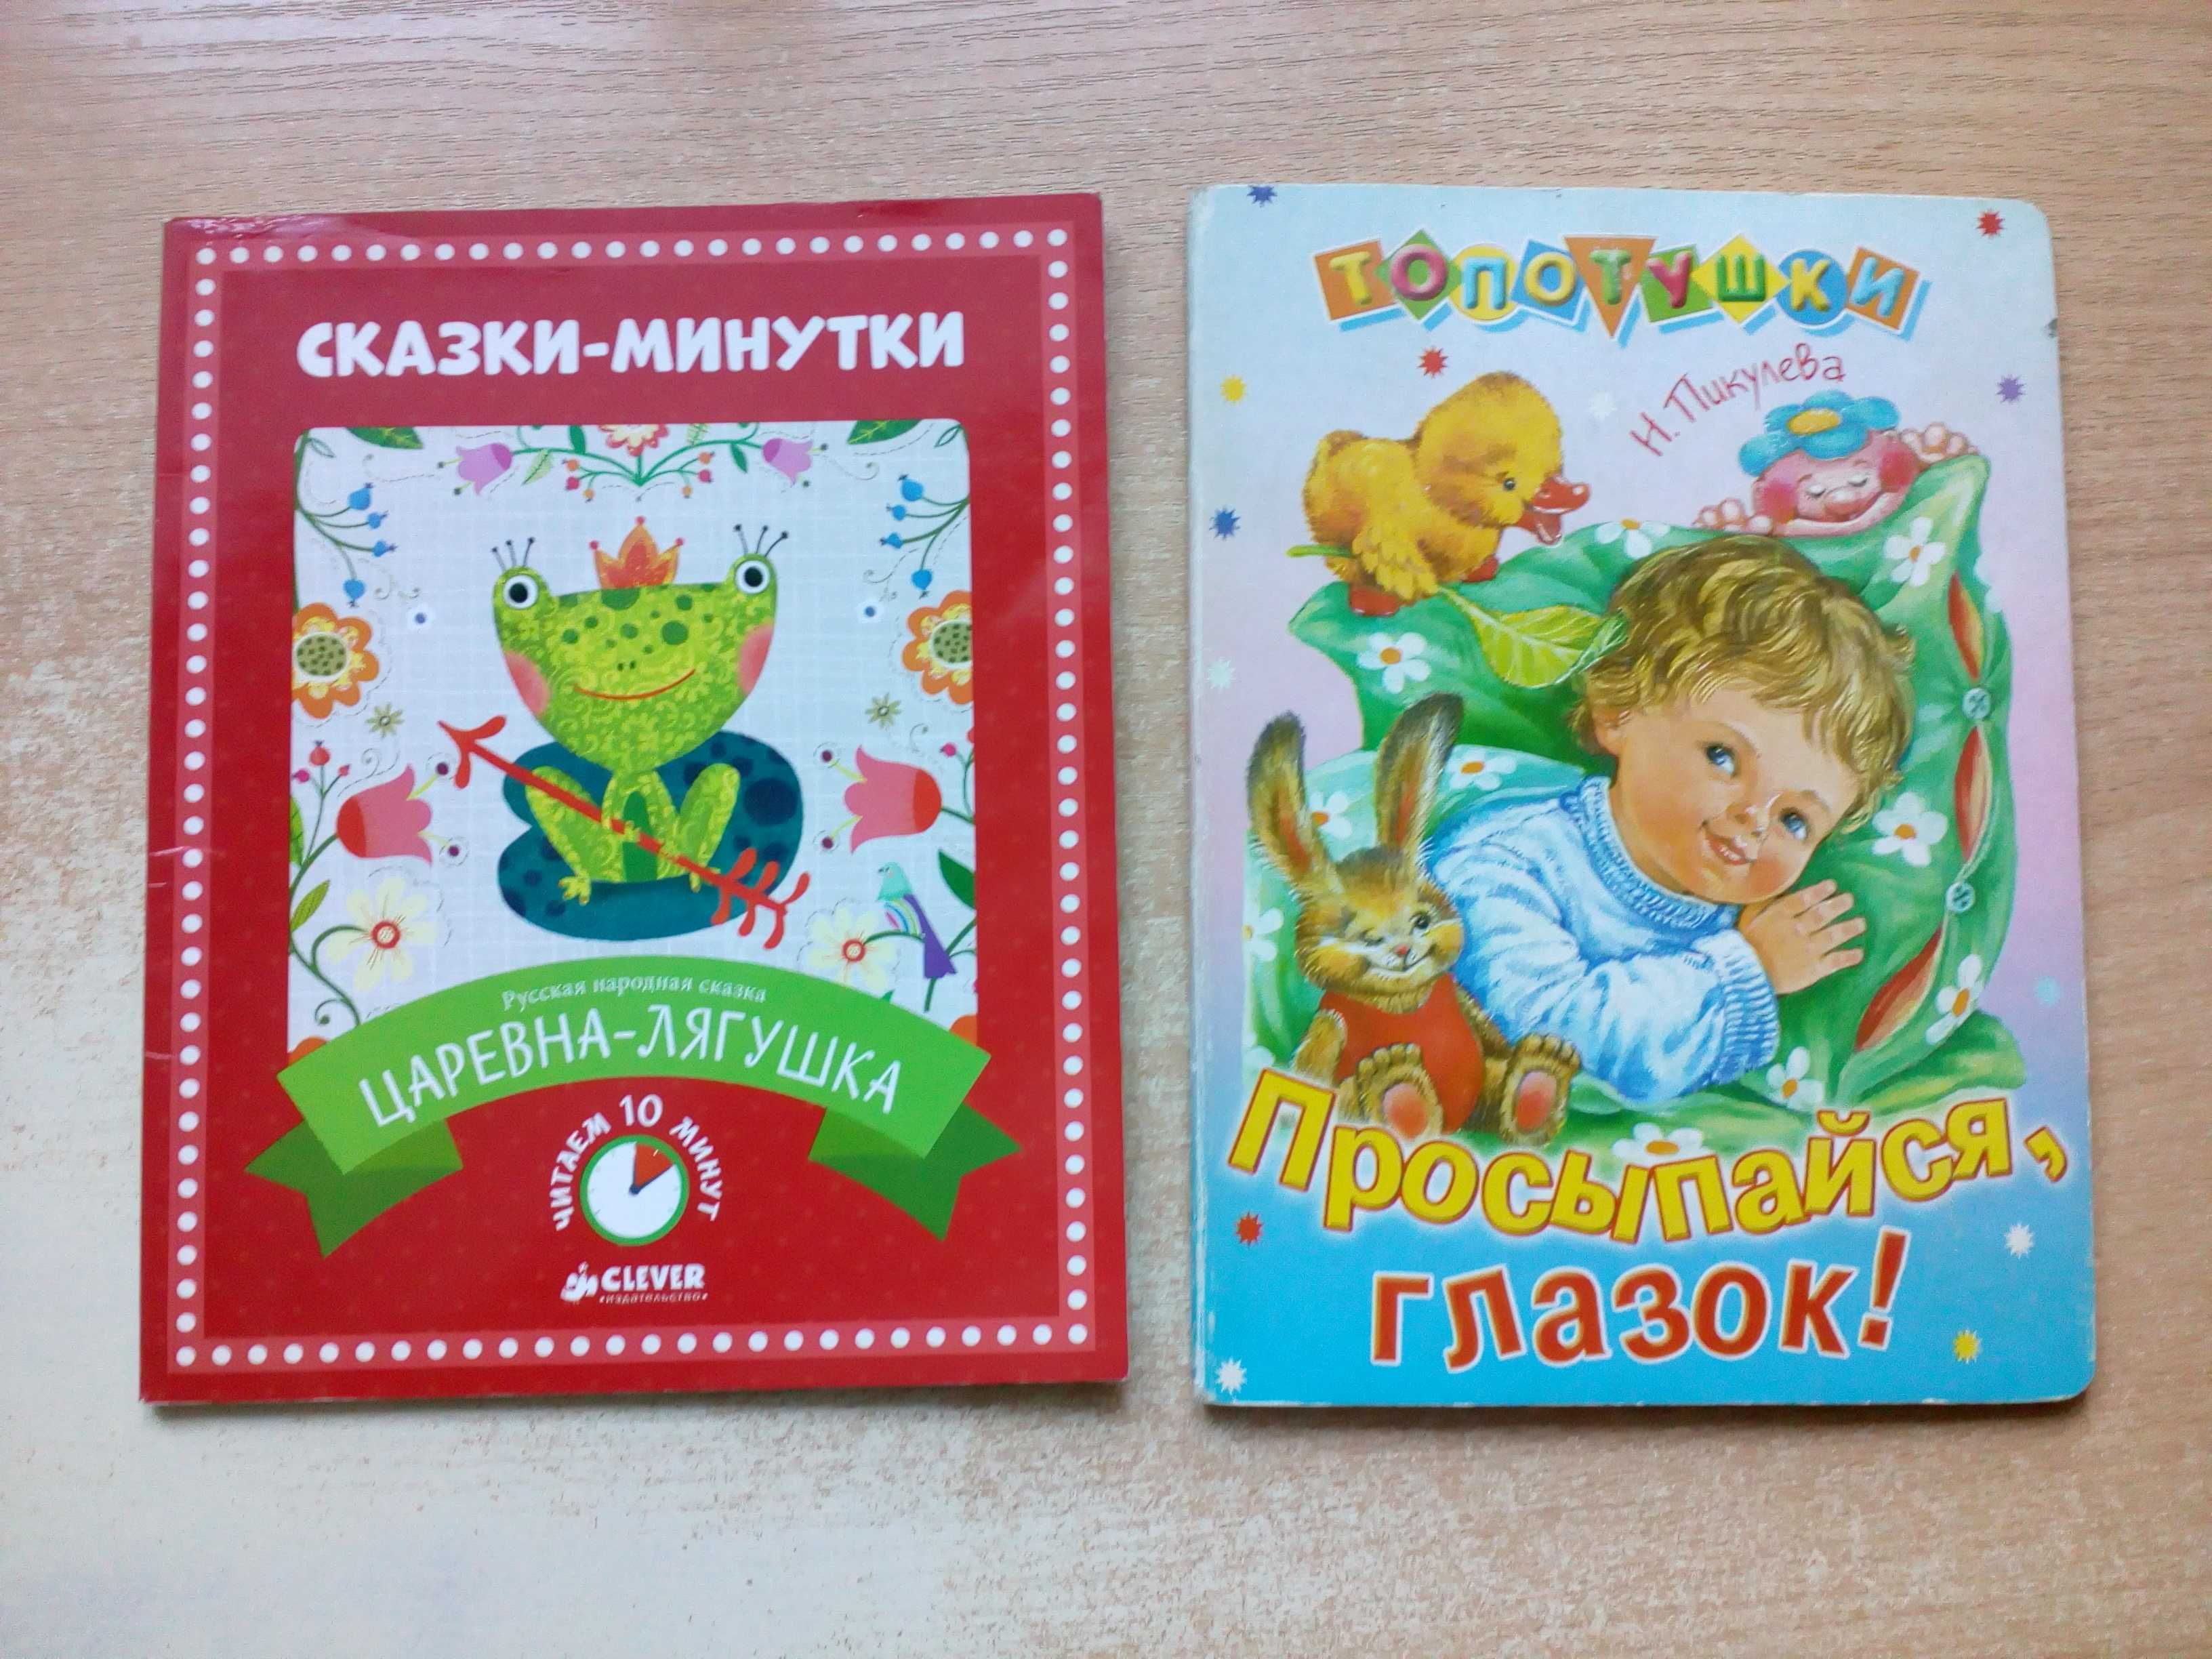 Маршак,Бунин,Станюкович и др.(всего 10 книг)для детей.